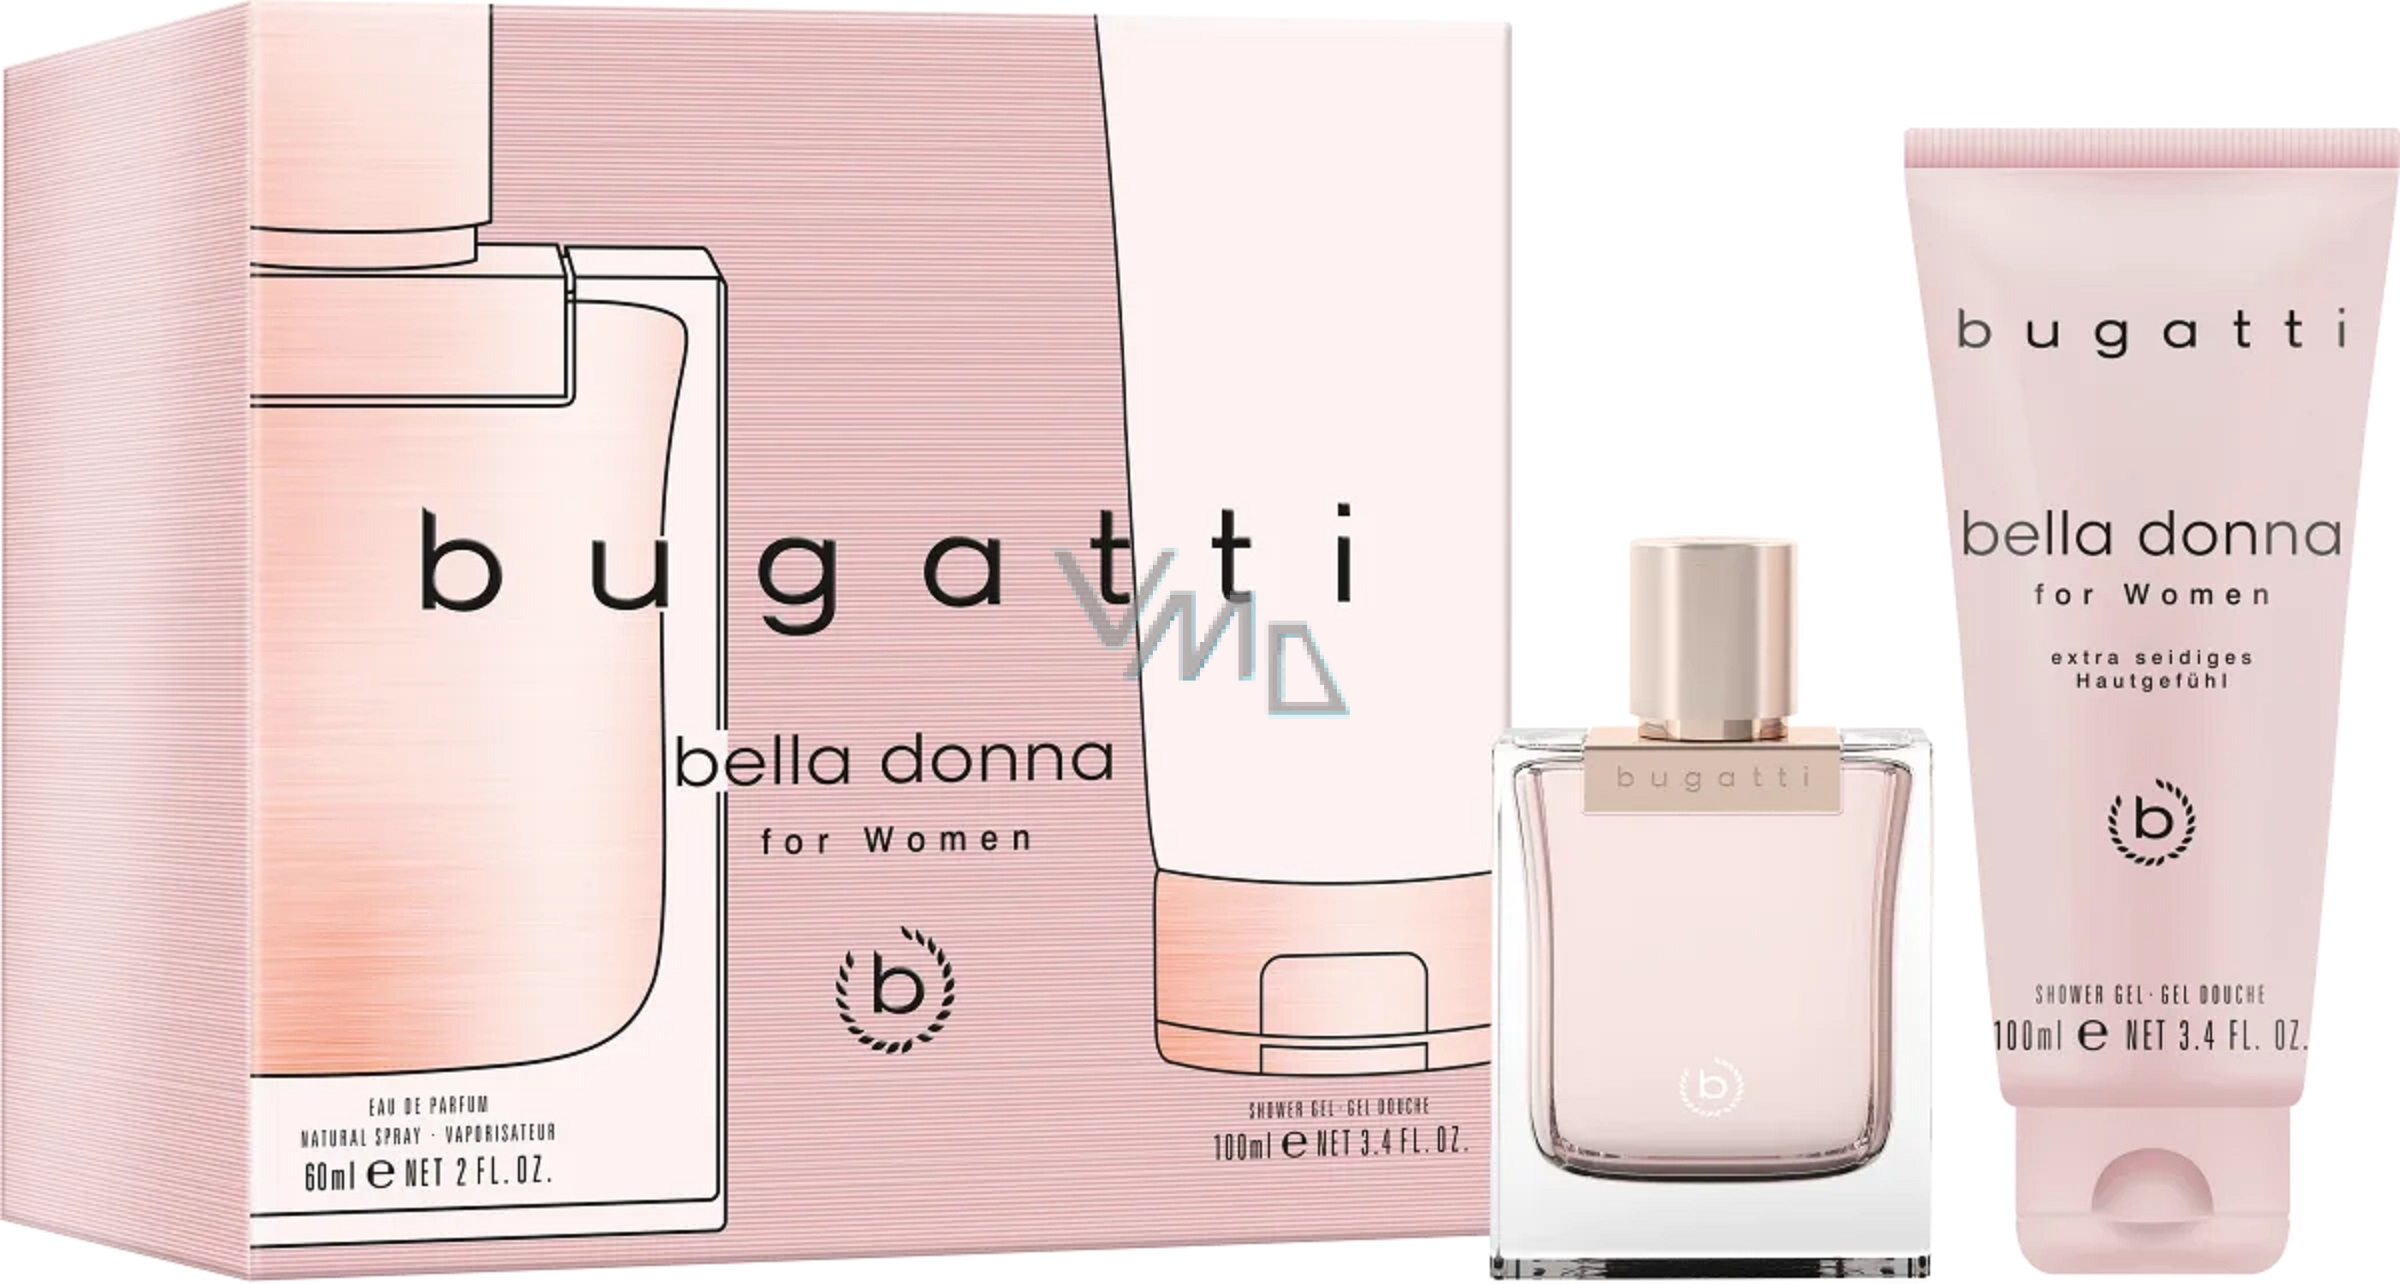 Bugatti Bella Donna parfémovaná + - 60 ženy sada pro voda drogerie VMD sprchový ml, gel parfumerie ml 100 dárková a